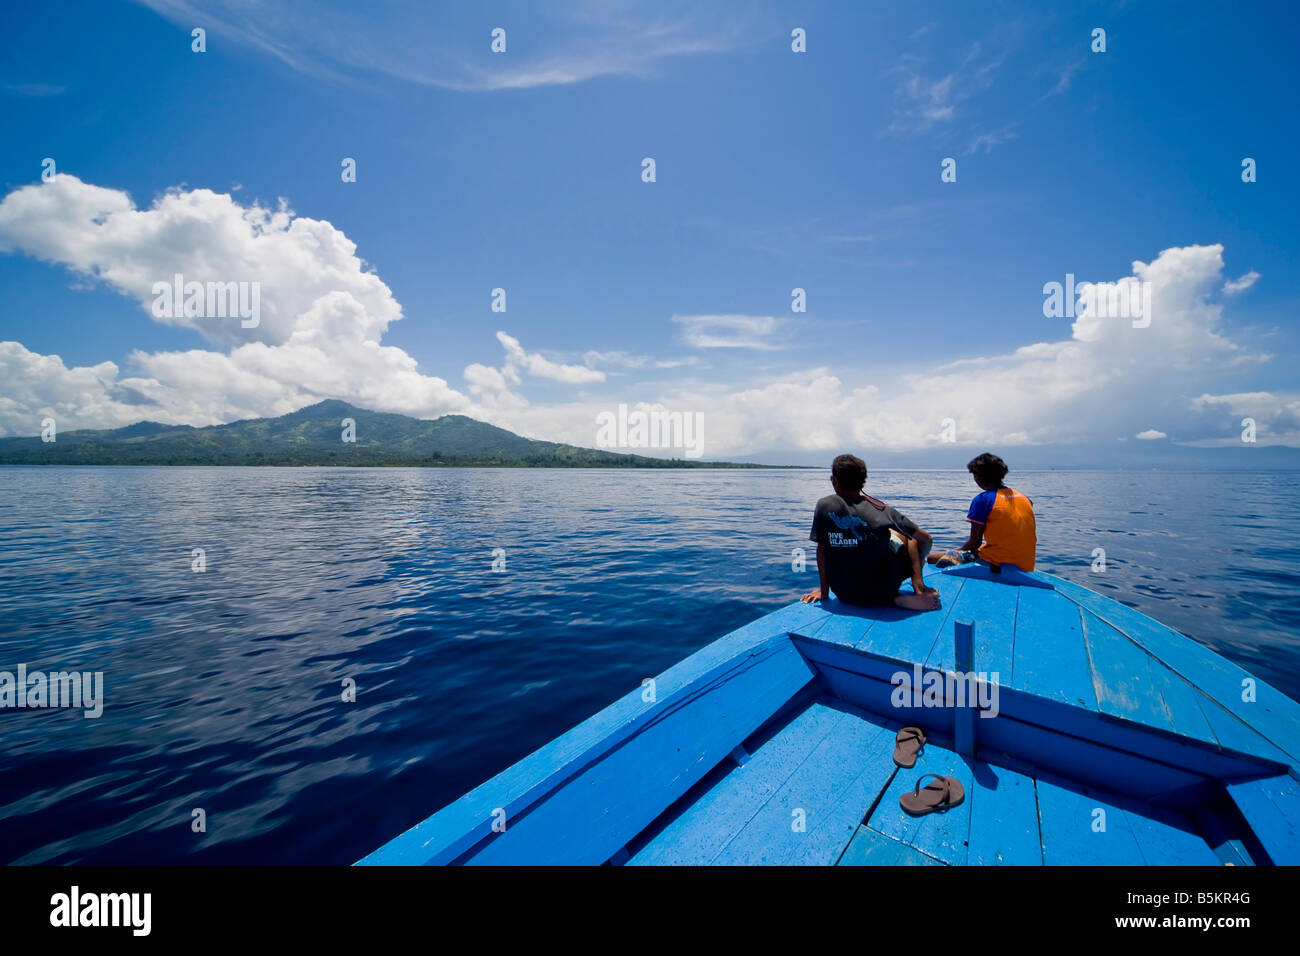 Ver los barcos de buceo de proa contra un cielo azul con hermosas cloudscape. Una pareja adulta está sentado en la proa de la embarcación. Foto de stock